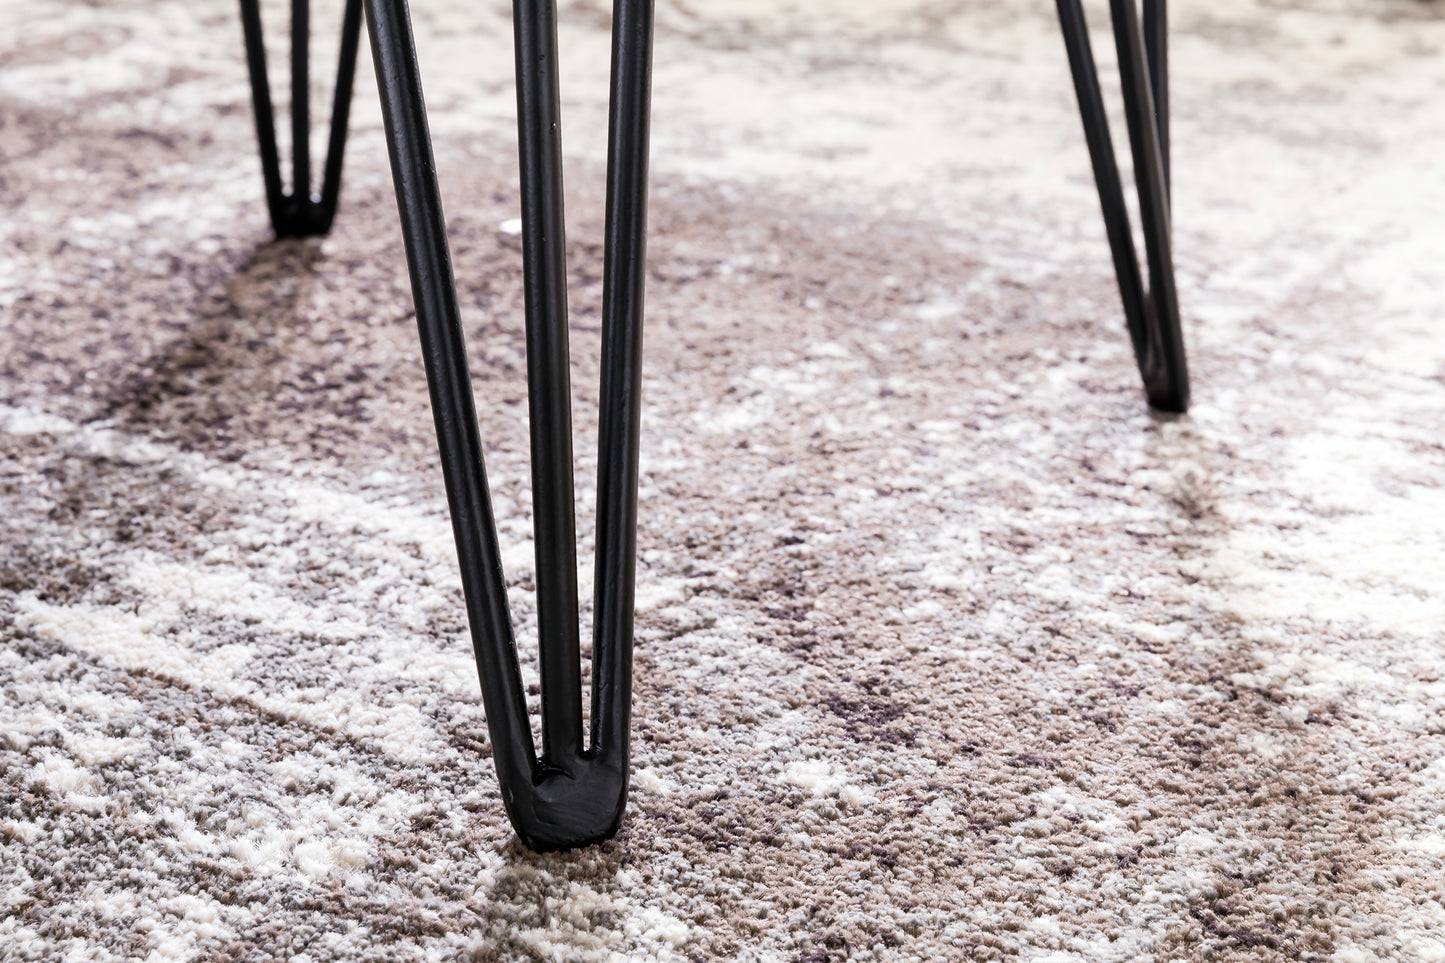 Salontafel MAHILO massief houten tafel met Wane 56x38x51 cm | Sheesham houten tafel met metalen poten | Woonkamer tafel in een rustieke, landelijke stijl